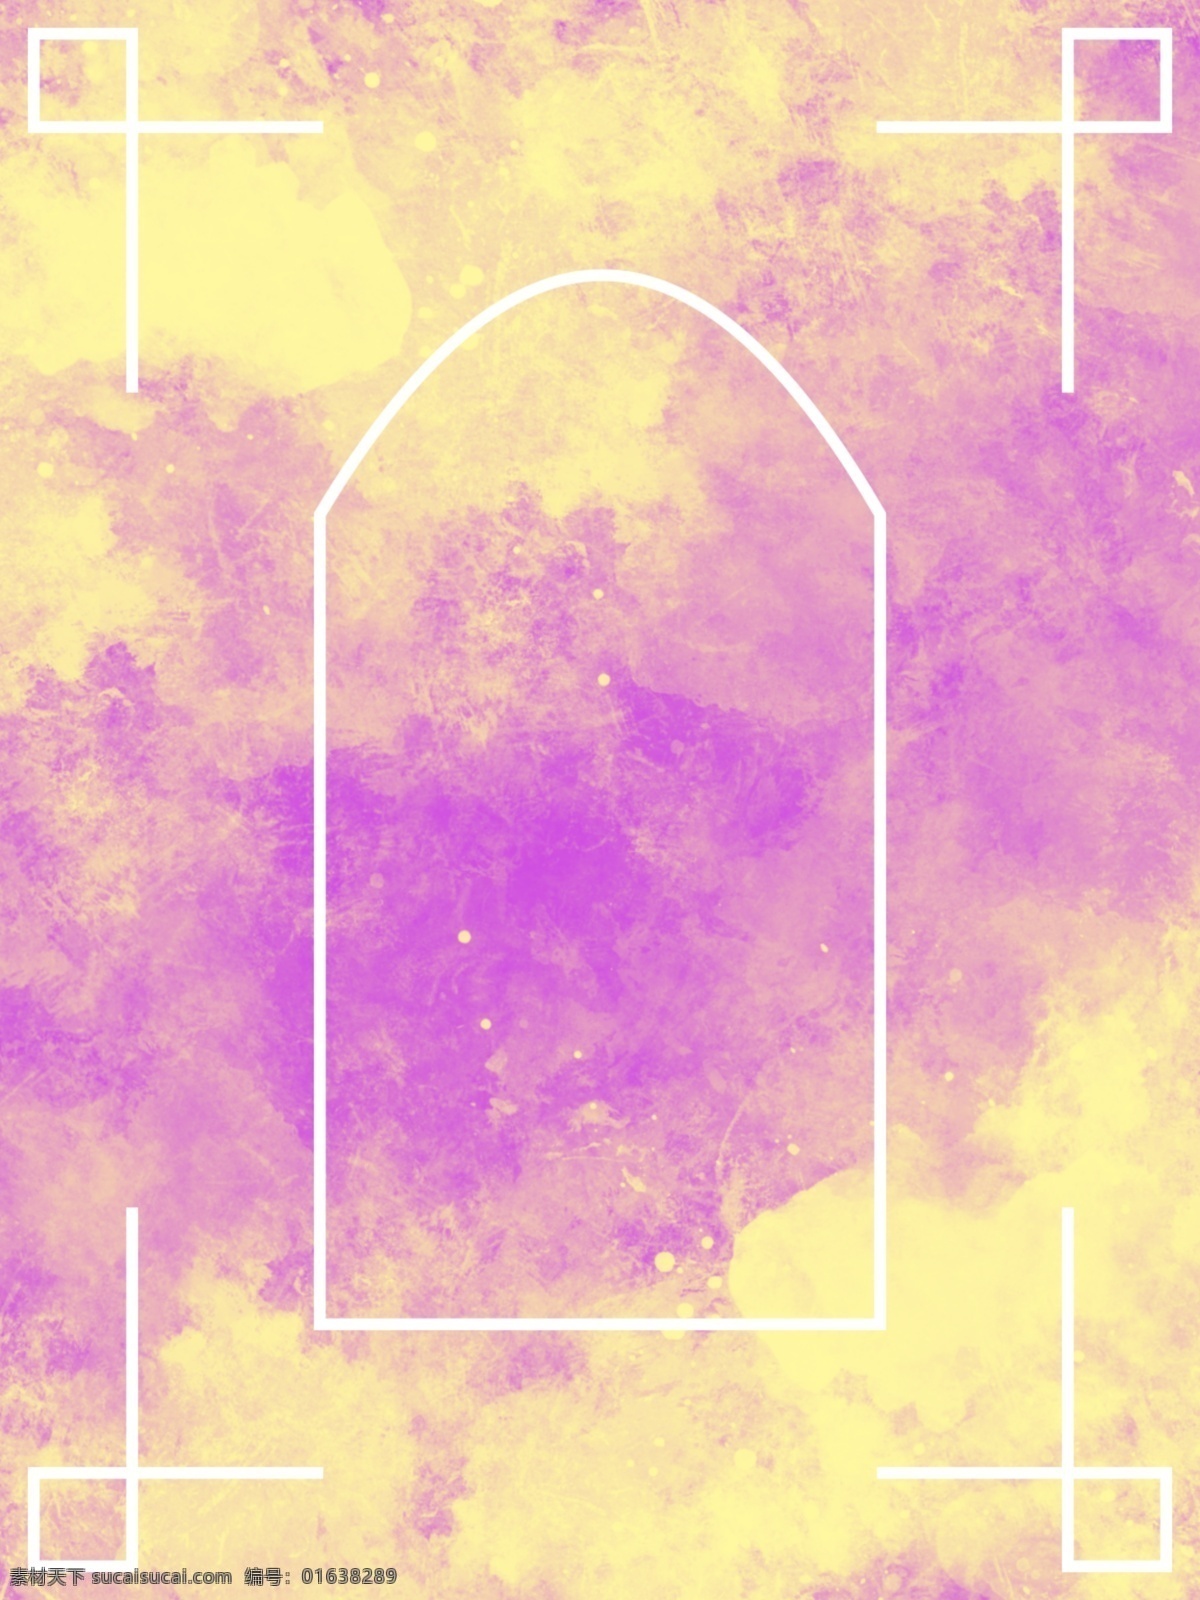 原创 水彩 上帝 之窗 h5 背景 水彩纹理 天窗 线条 渐变 紫色 上帝之窗 水彩印迹